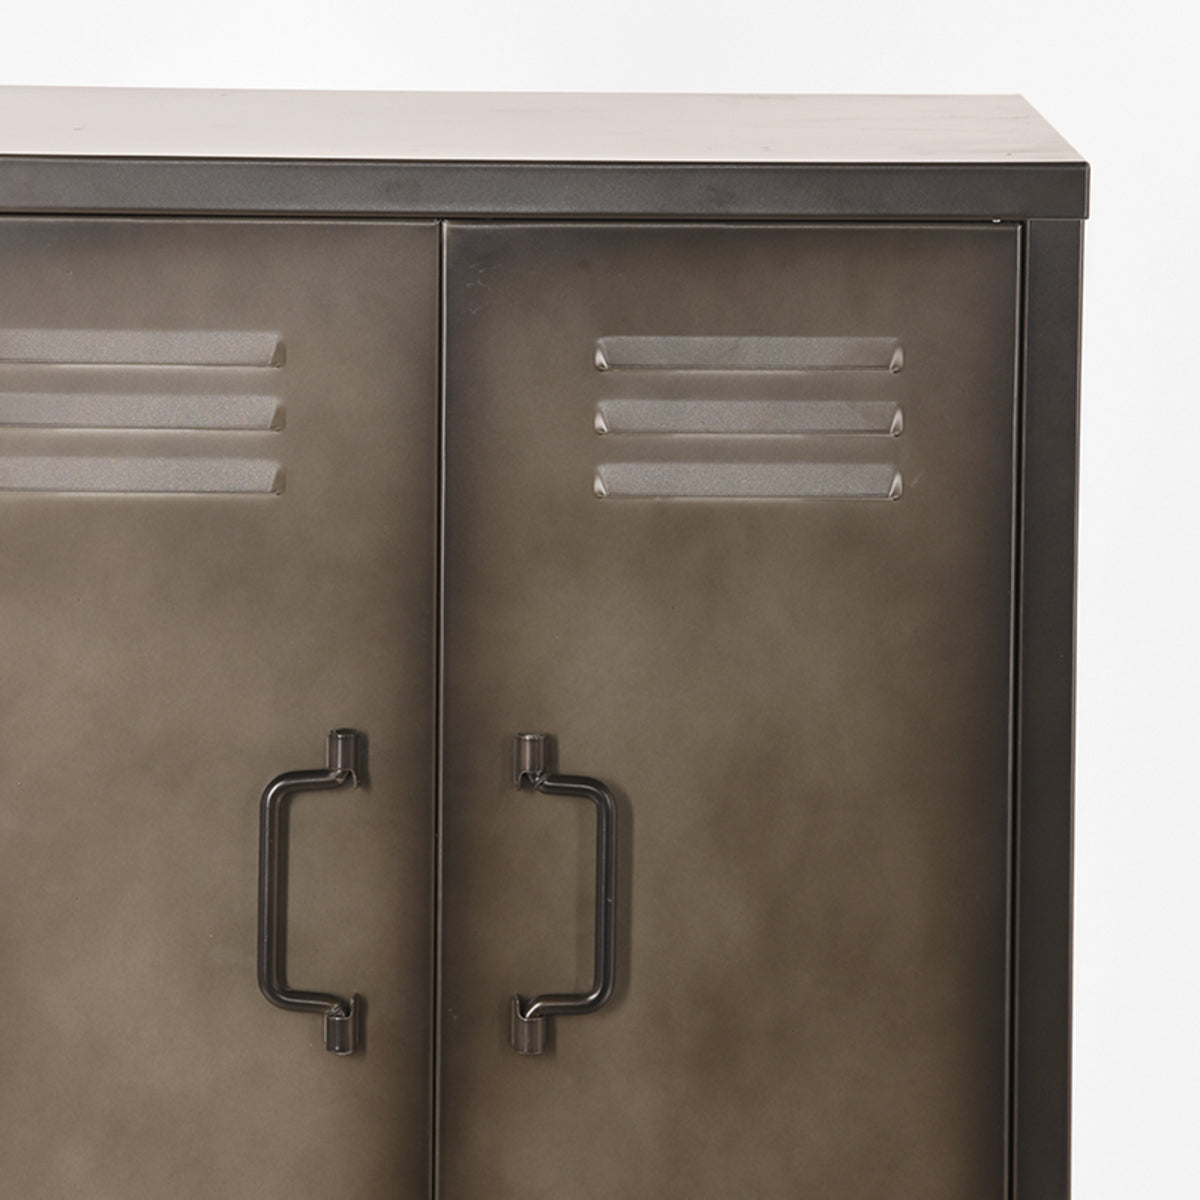 LABEL51 Storage Cabinet Fence - Vintage Metal - Metal